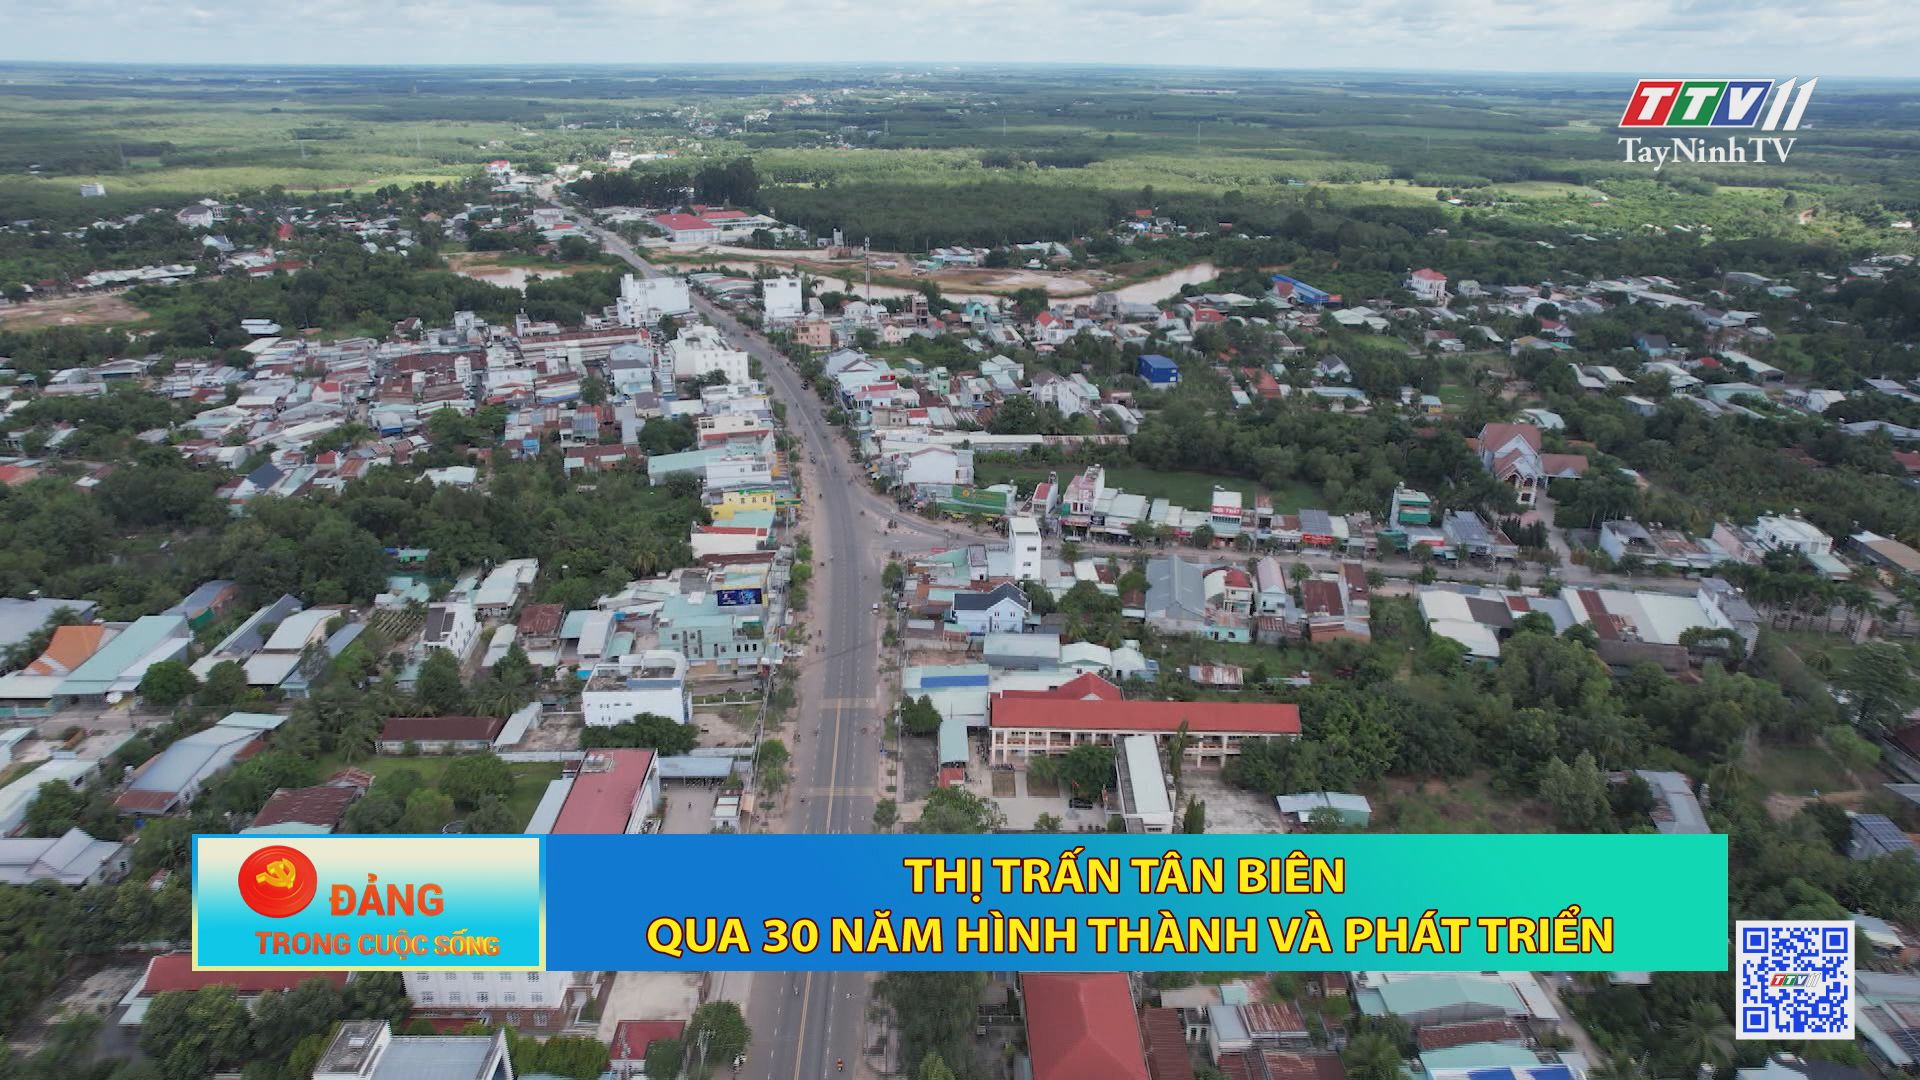 Thị trấn Tân Biên qua 30 năm hình thành và phát triển | Đảng trong cuộc sống | TayNinhTV